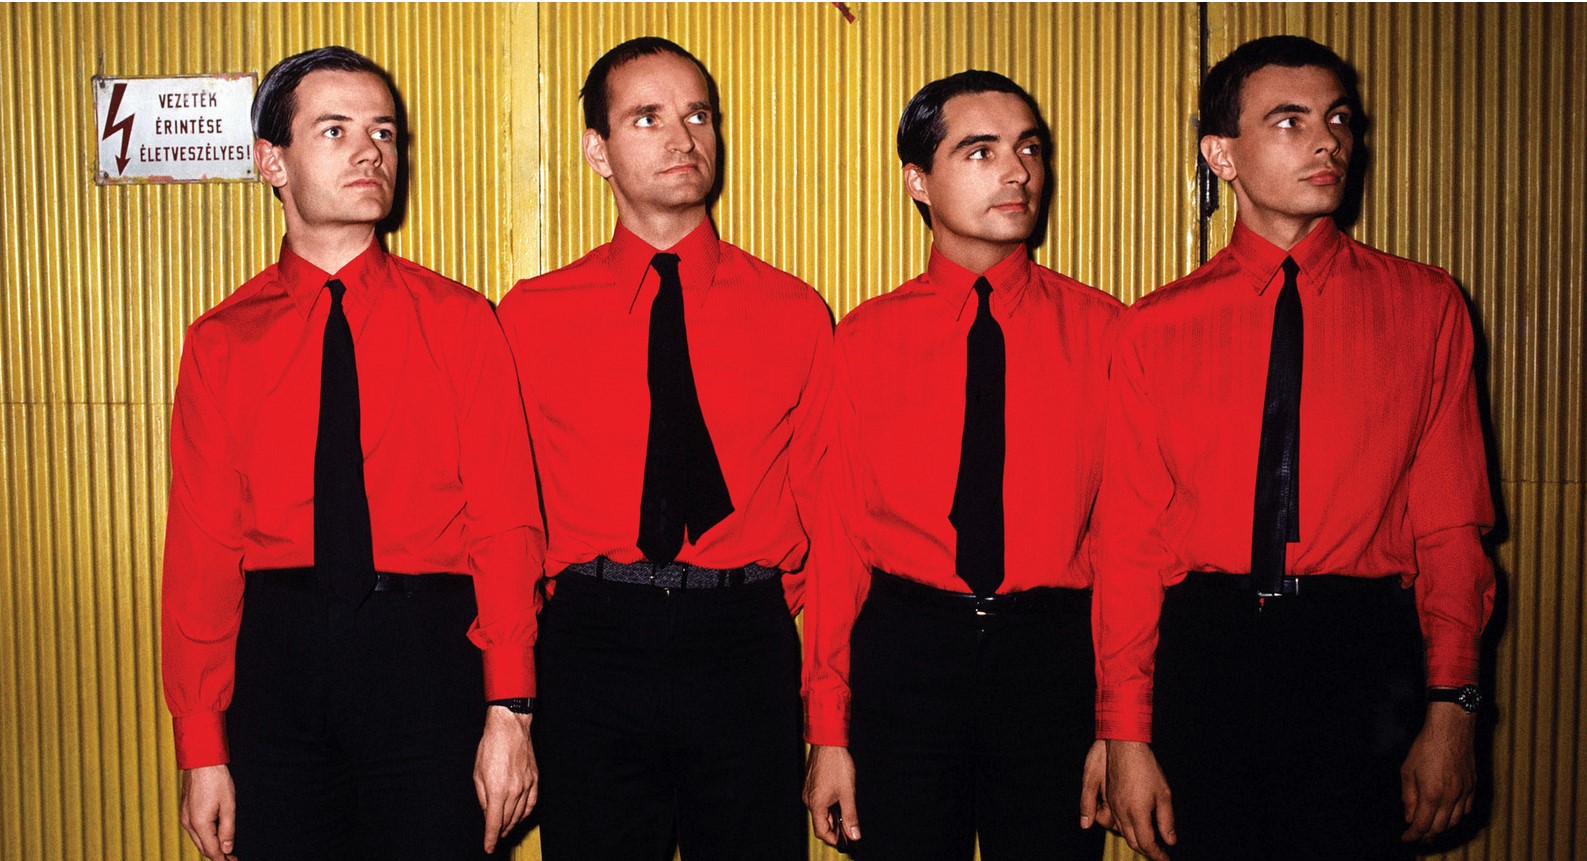 Kraftwerk hit songs and albums